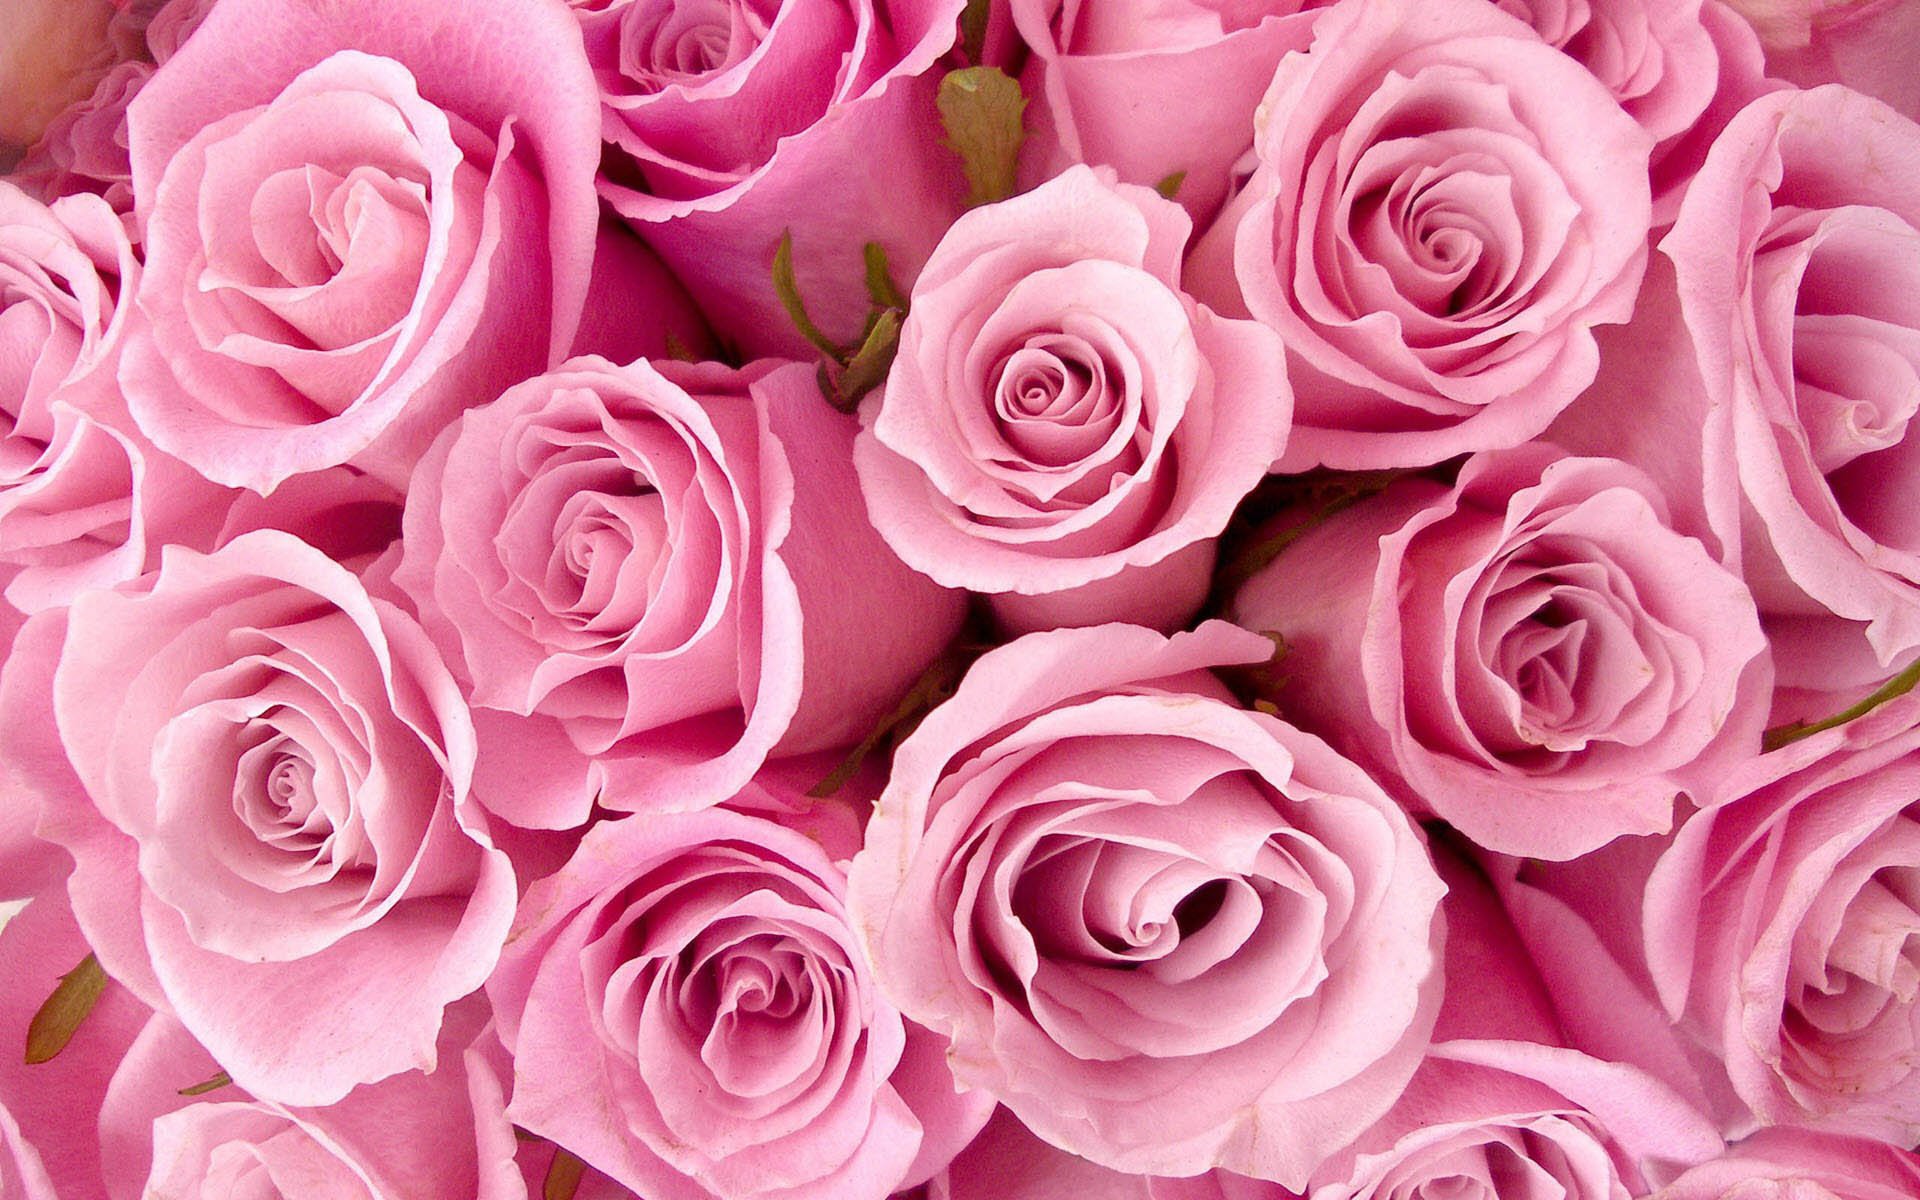 Cùng ngắm những bông hoa màu hồng tuyệt đẹp trên hình nền cho điện thoại của bạn. Với màu sắc tươi sáng và tinh tế, đây chắc chắn là lựa chọn hoàn hảo để làm nổi bật màn hình điện thoại của bạn.